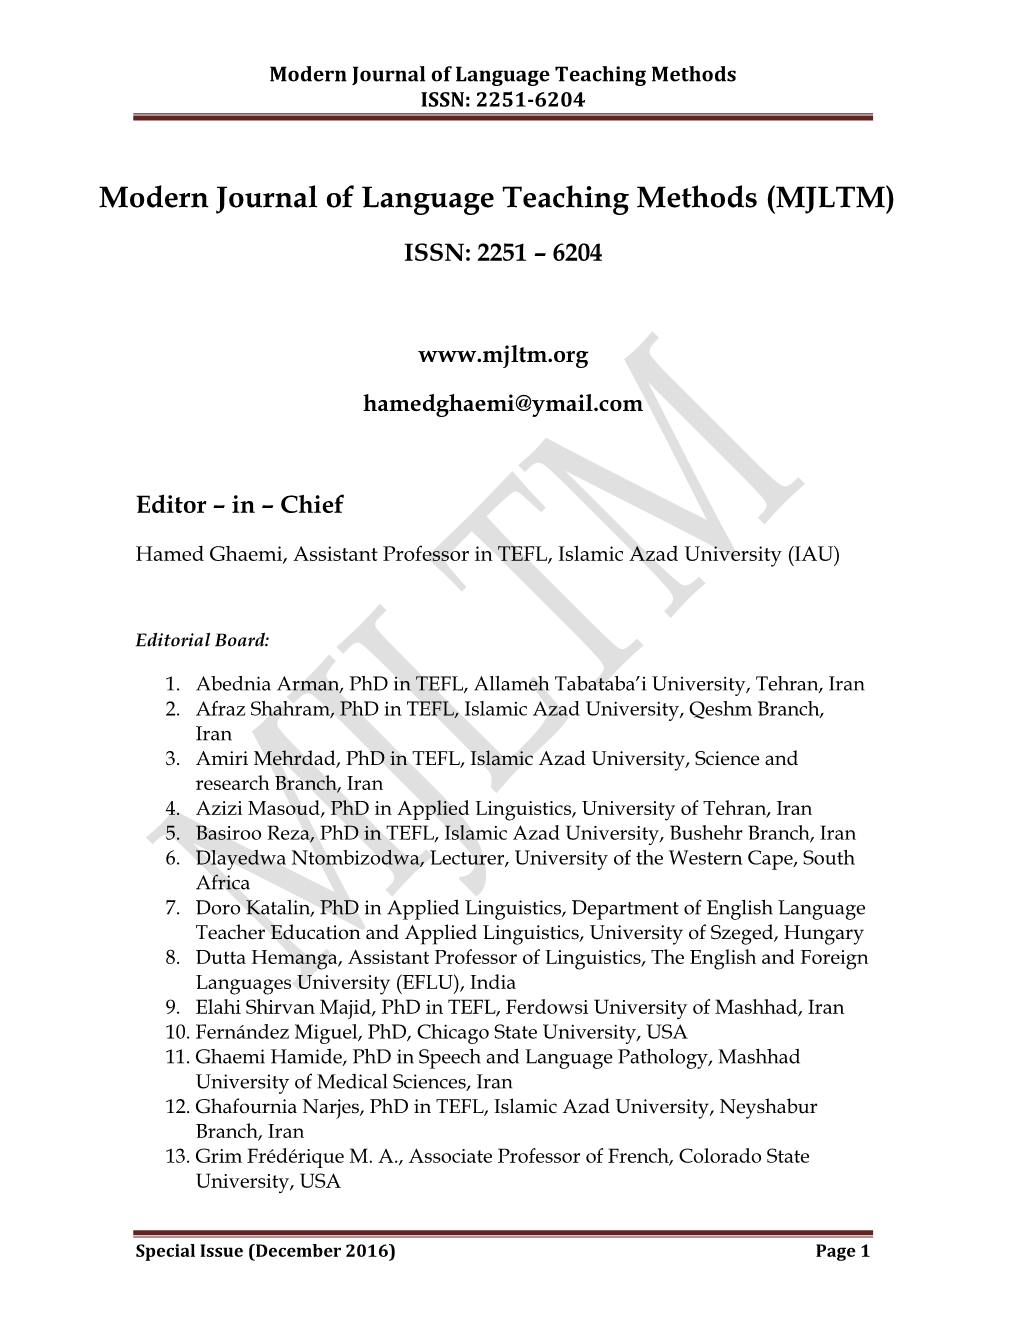 Modern Journal of Language Teaching Methods (MJLTM)